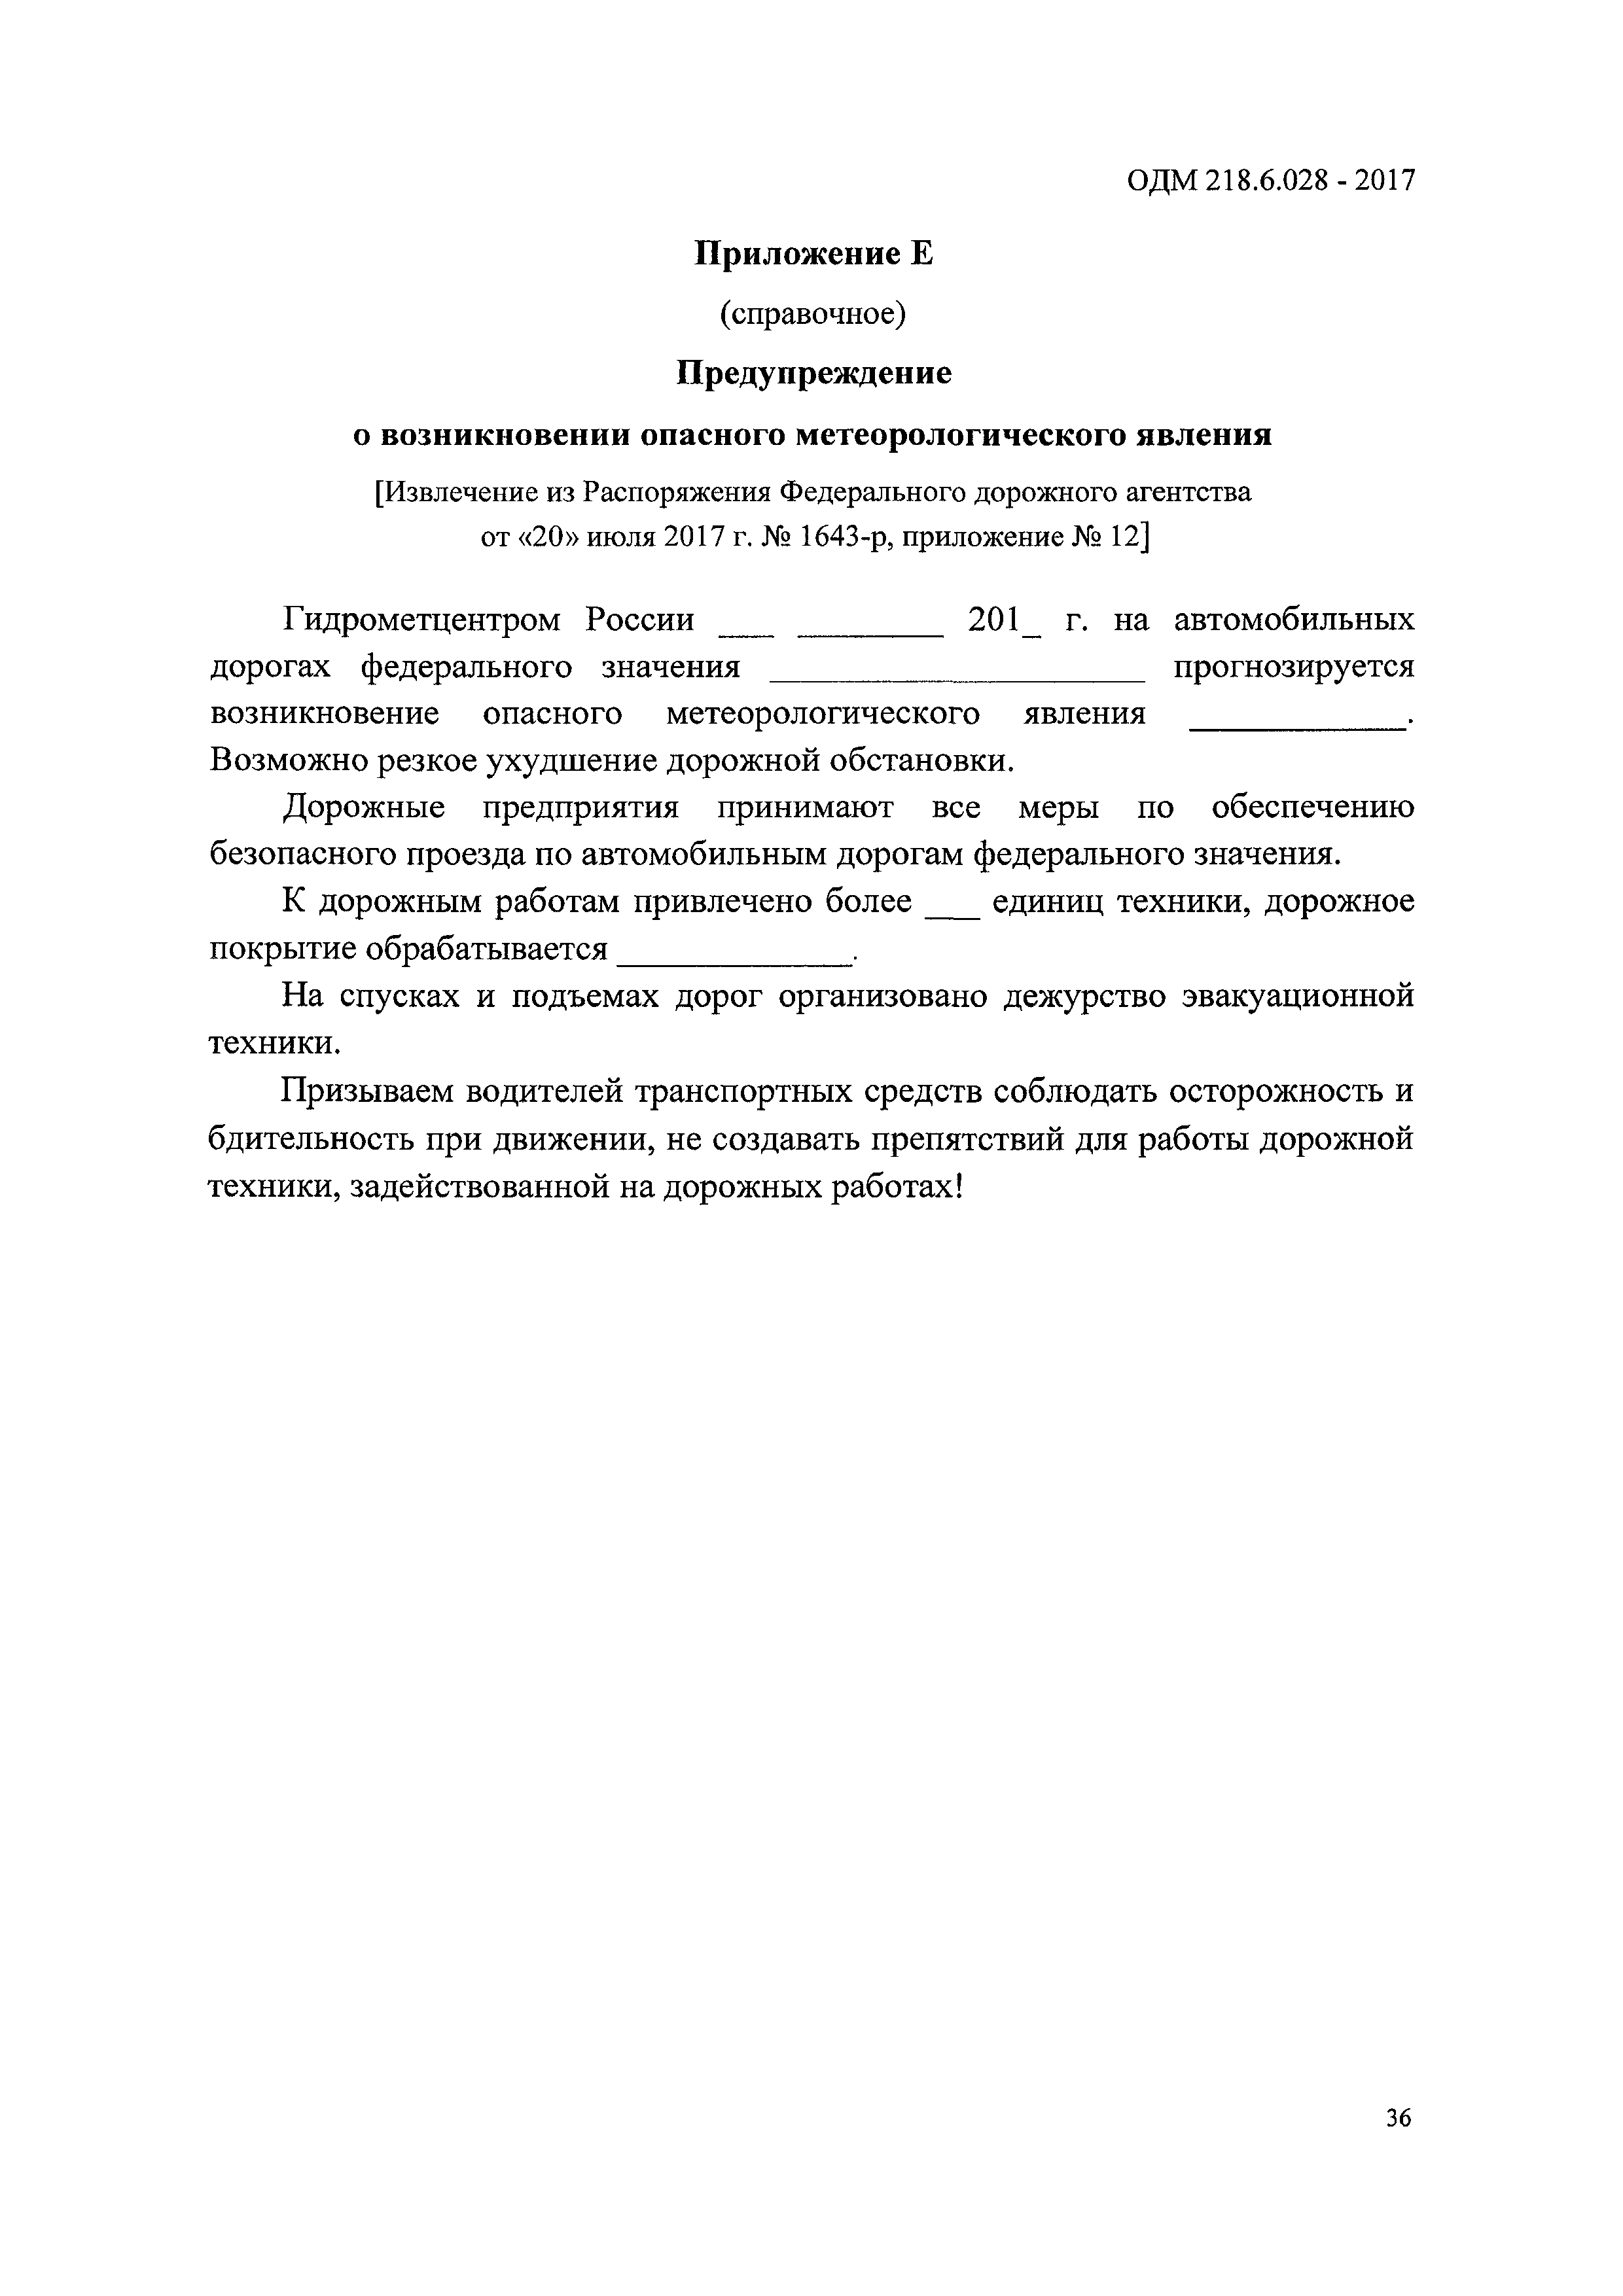 ОДМ 218.6.028-2017